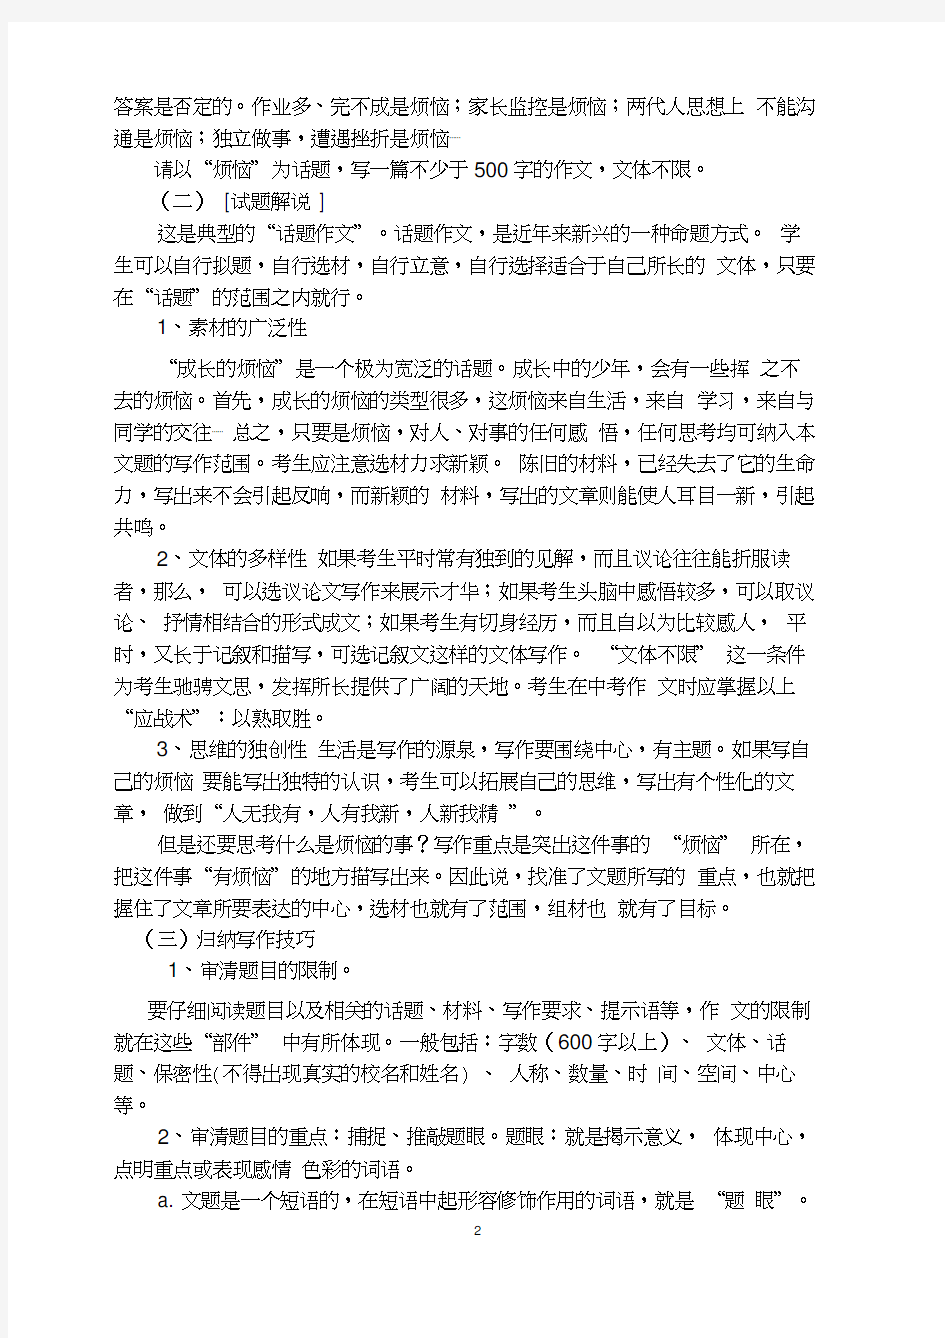 初中语文作文的审题立意与选材谋篇案例